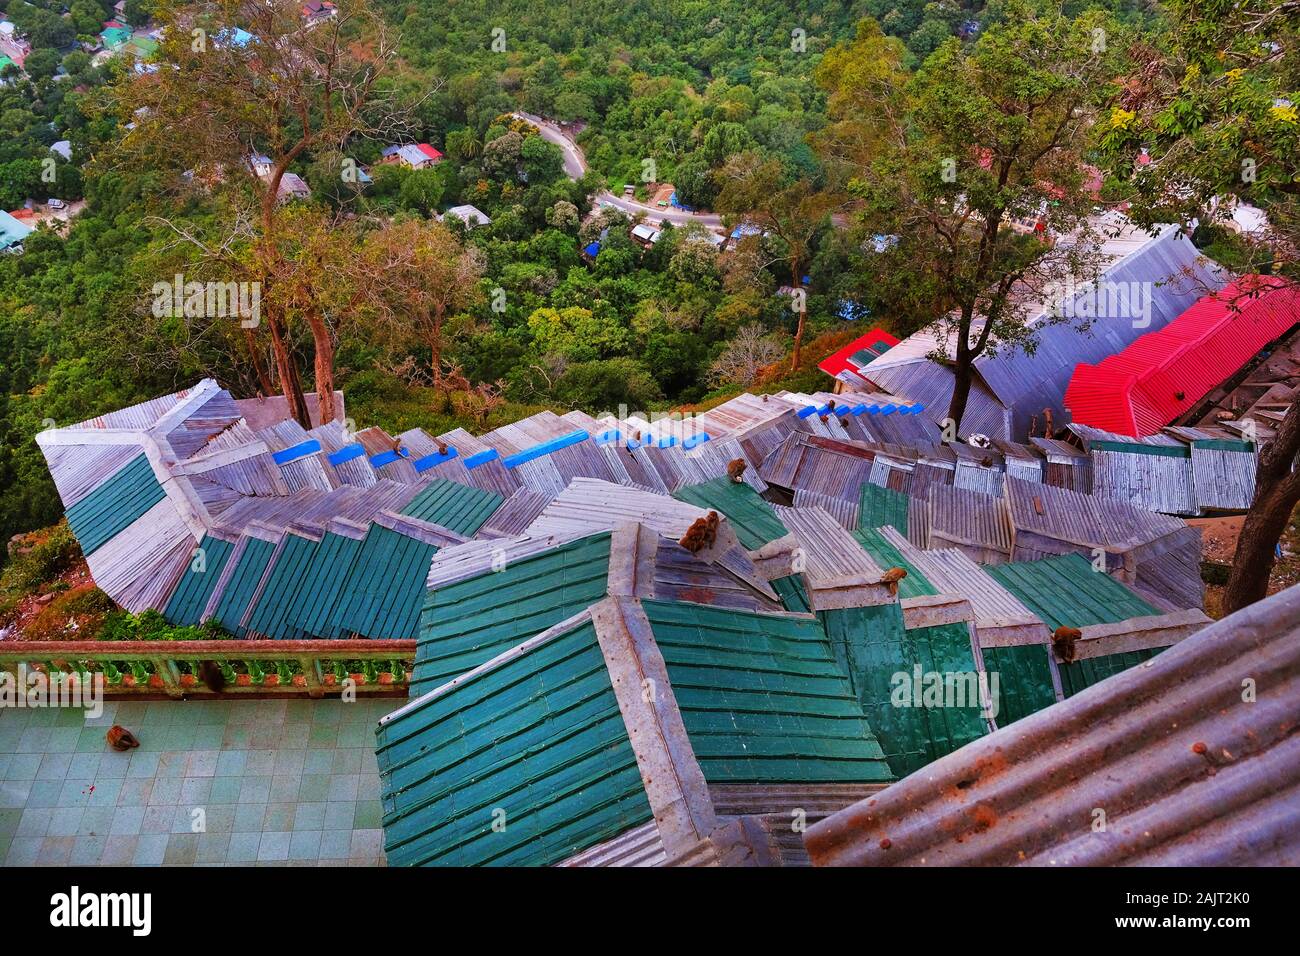 Mit grünen und roten Dächer in buddhistischen Tempel des Mount Popa, in Myanmar, von grüner Vegetation umgeben. Stockfoto